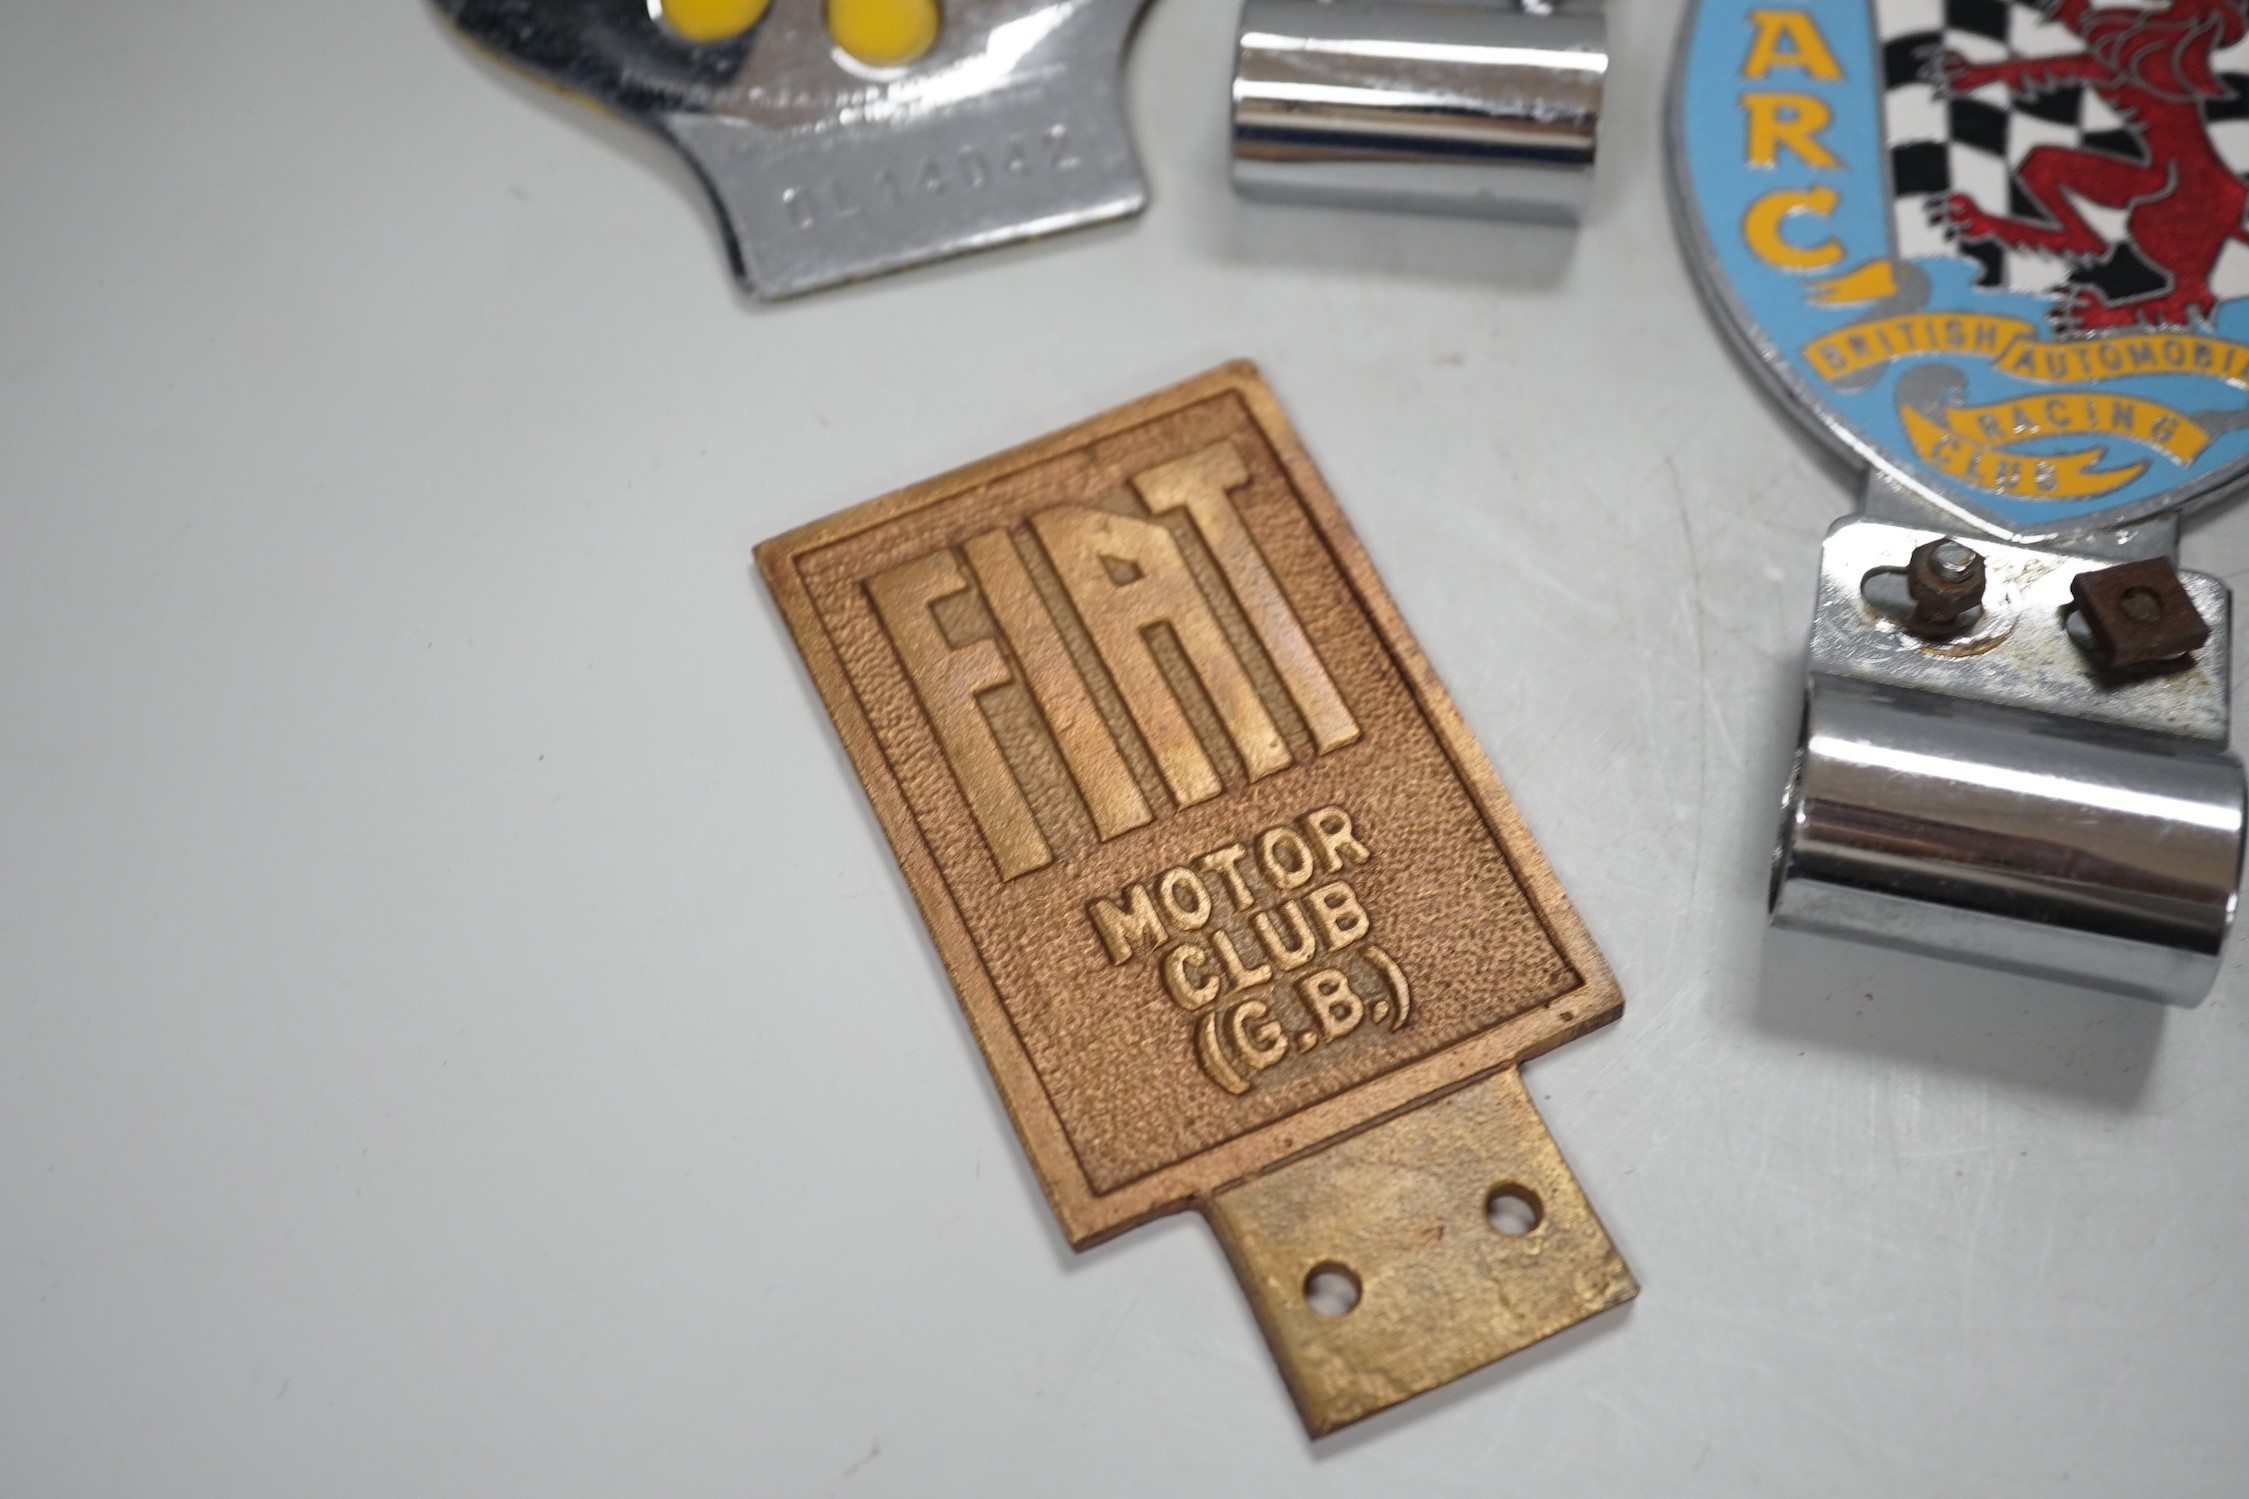 Seven car badges: Fiat motor club, British automobile racing club, MG club, the automobile club and three AA badges